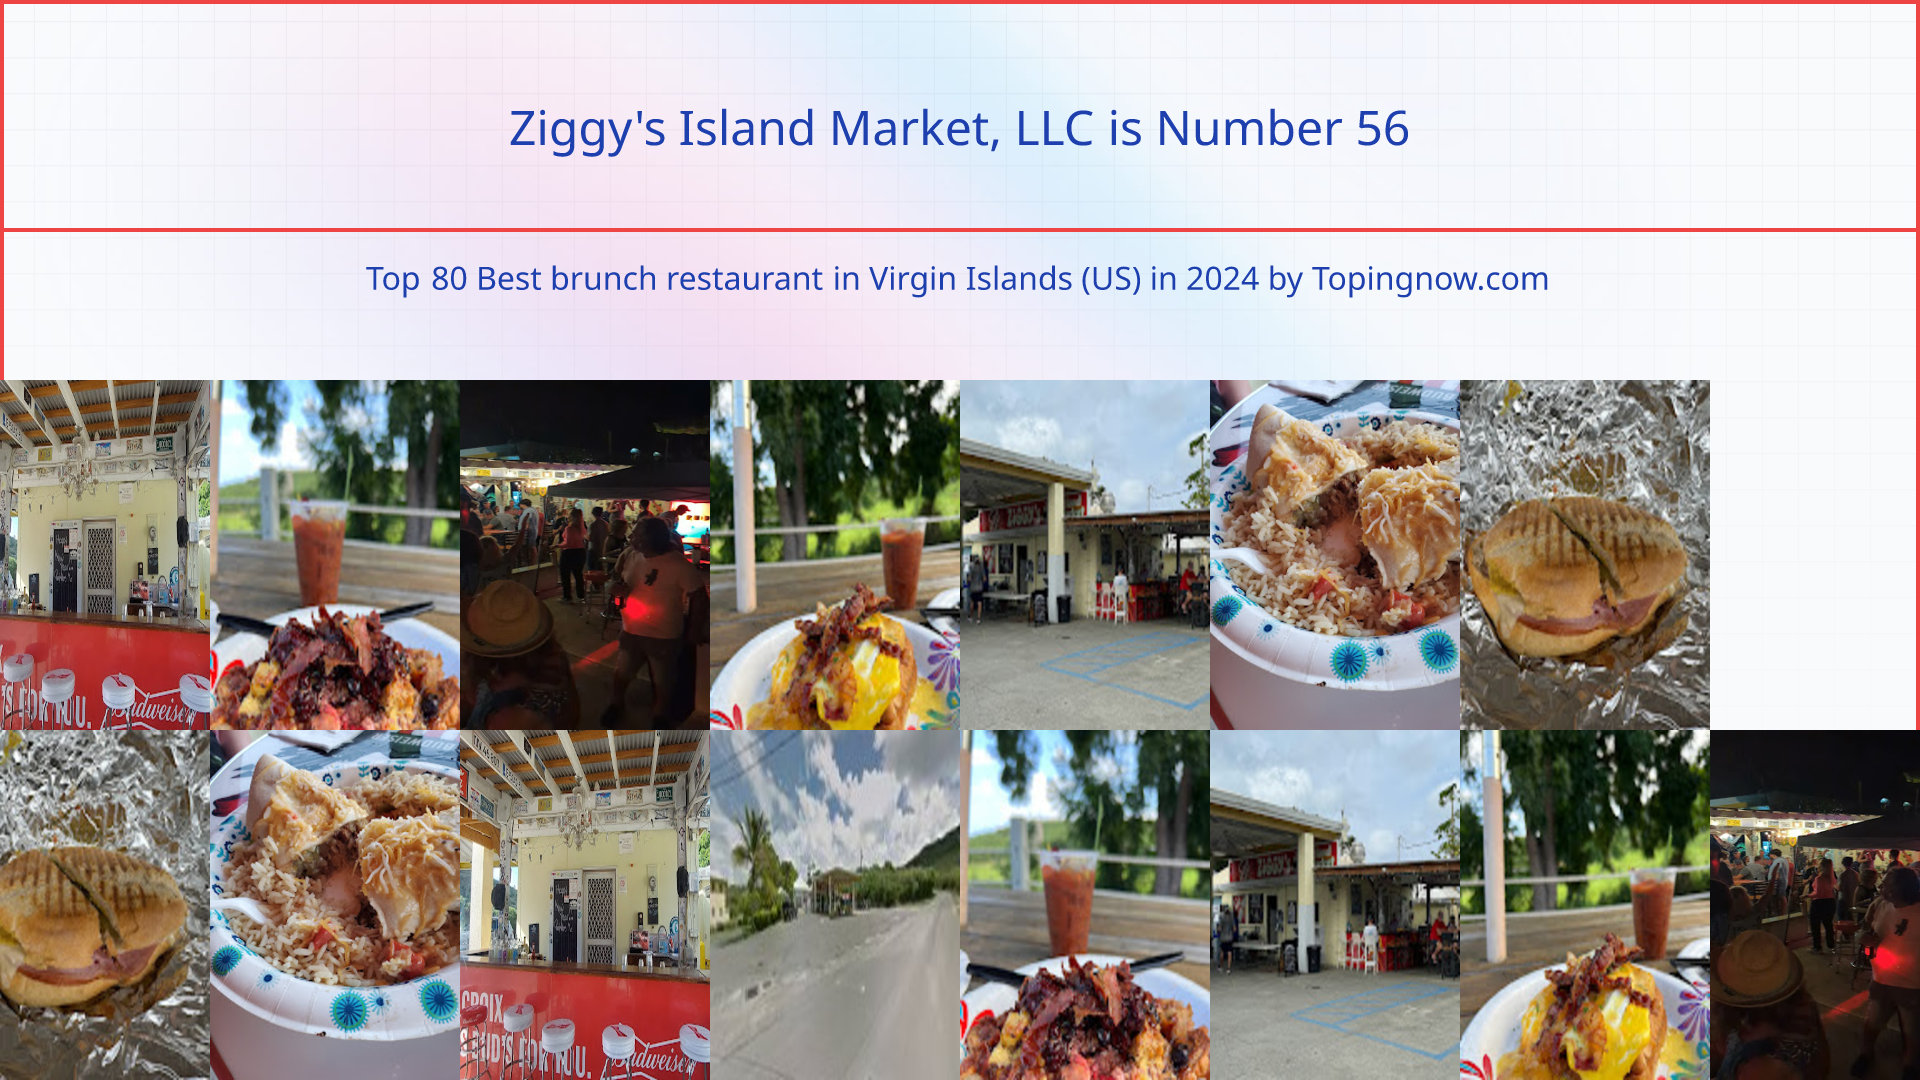 Ziggy's Island Market, LLC: Top 80 Best brunch restaurant in Virgin Islands (US) in 2024